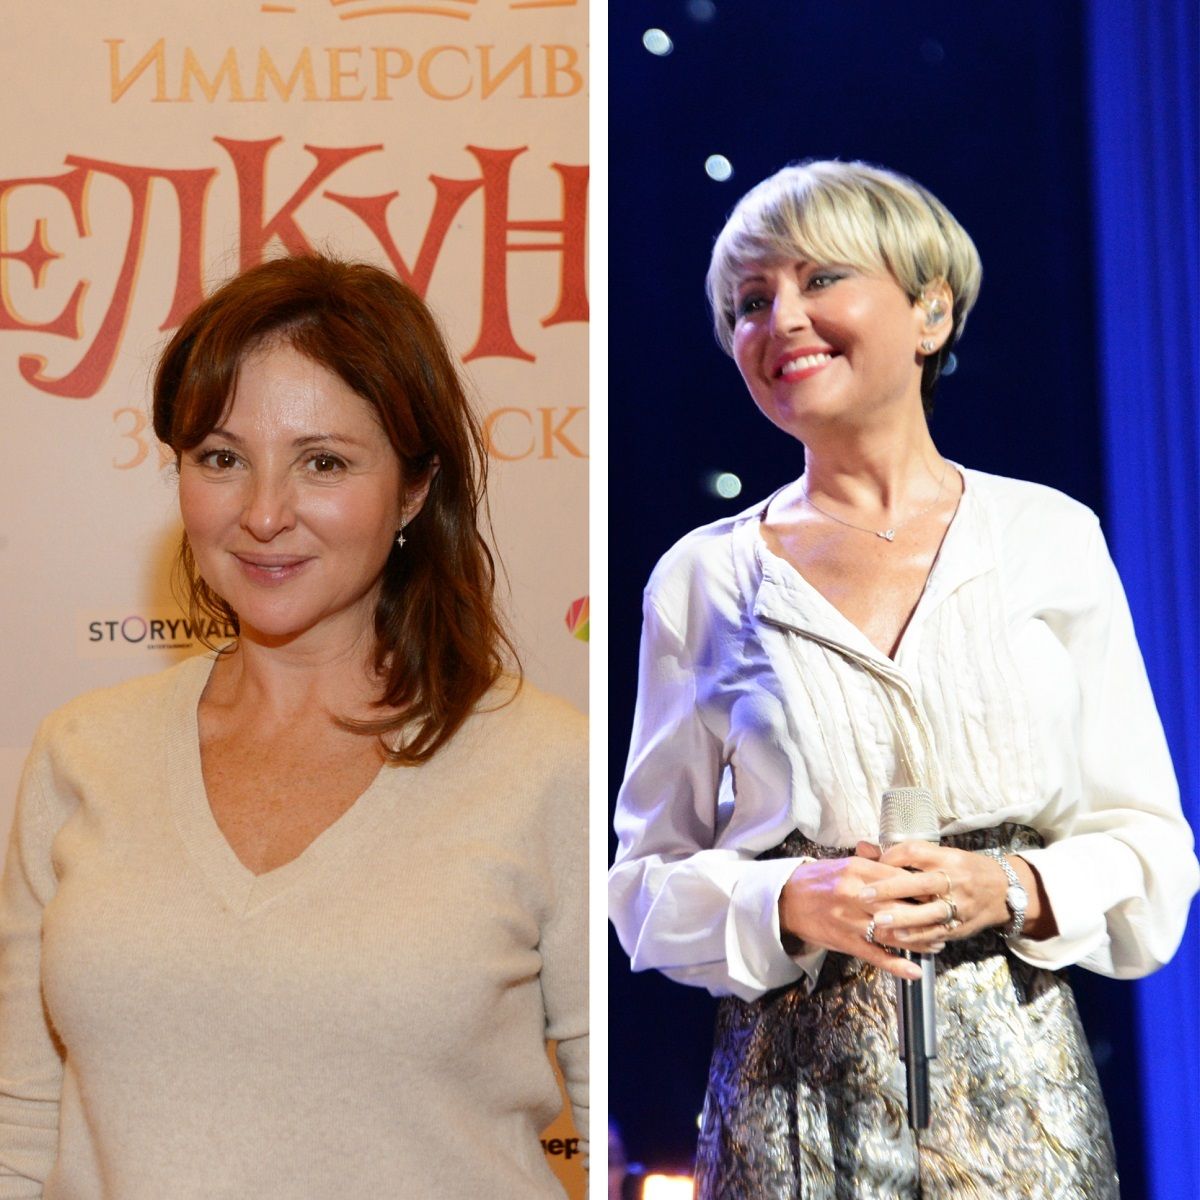 Анна Банщикова рассказала, как ее приняли за Анжелику Варум - Вокруг ТВ.